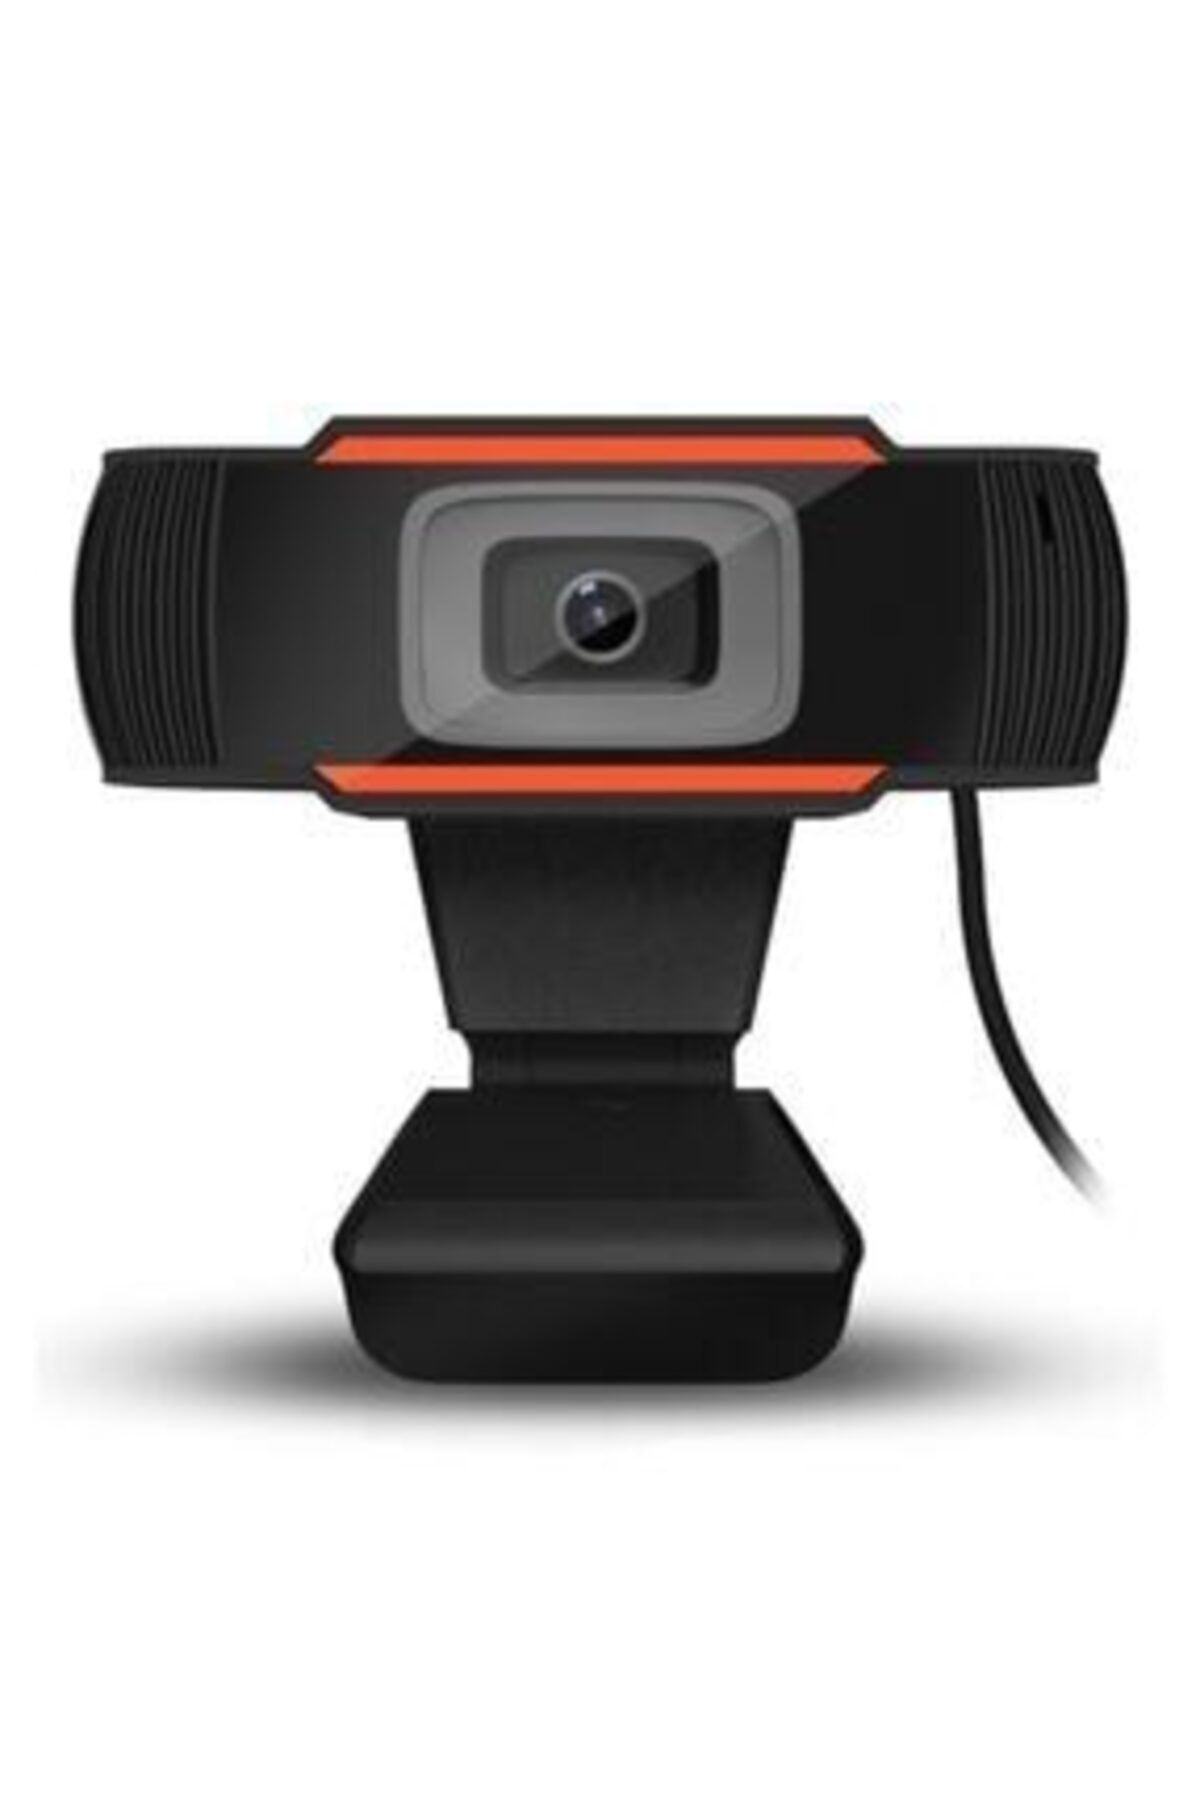 SANALİNK Mikrofonlu Webcam Kamera Hd Kalite 720p Eba Zoom Destekli Tüm Windows Sürümleri Ile Uyumlu Webc-1132